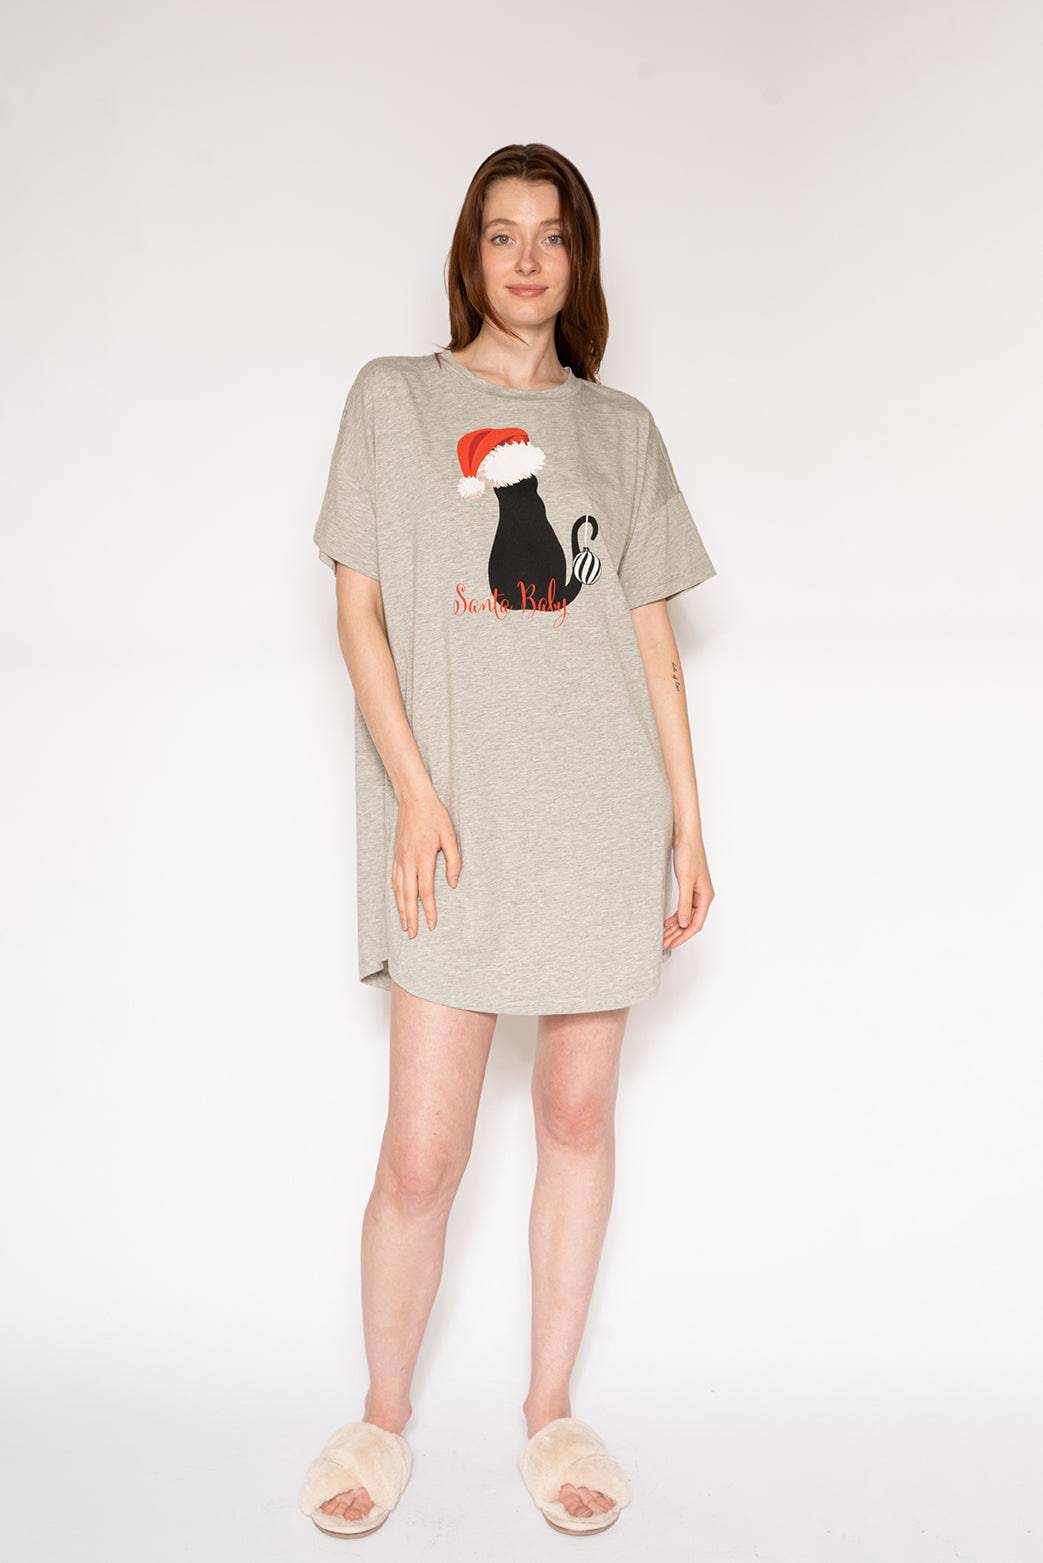 T-Shirt Dress - Santa Baby - LATTELOVE Co.